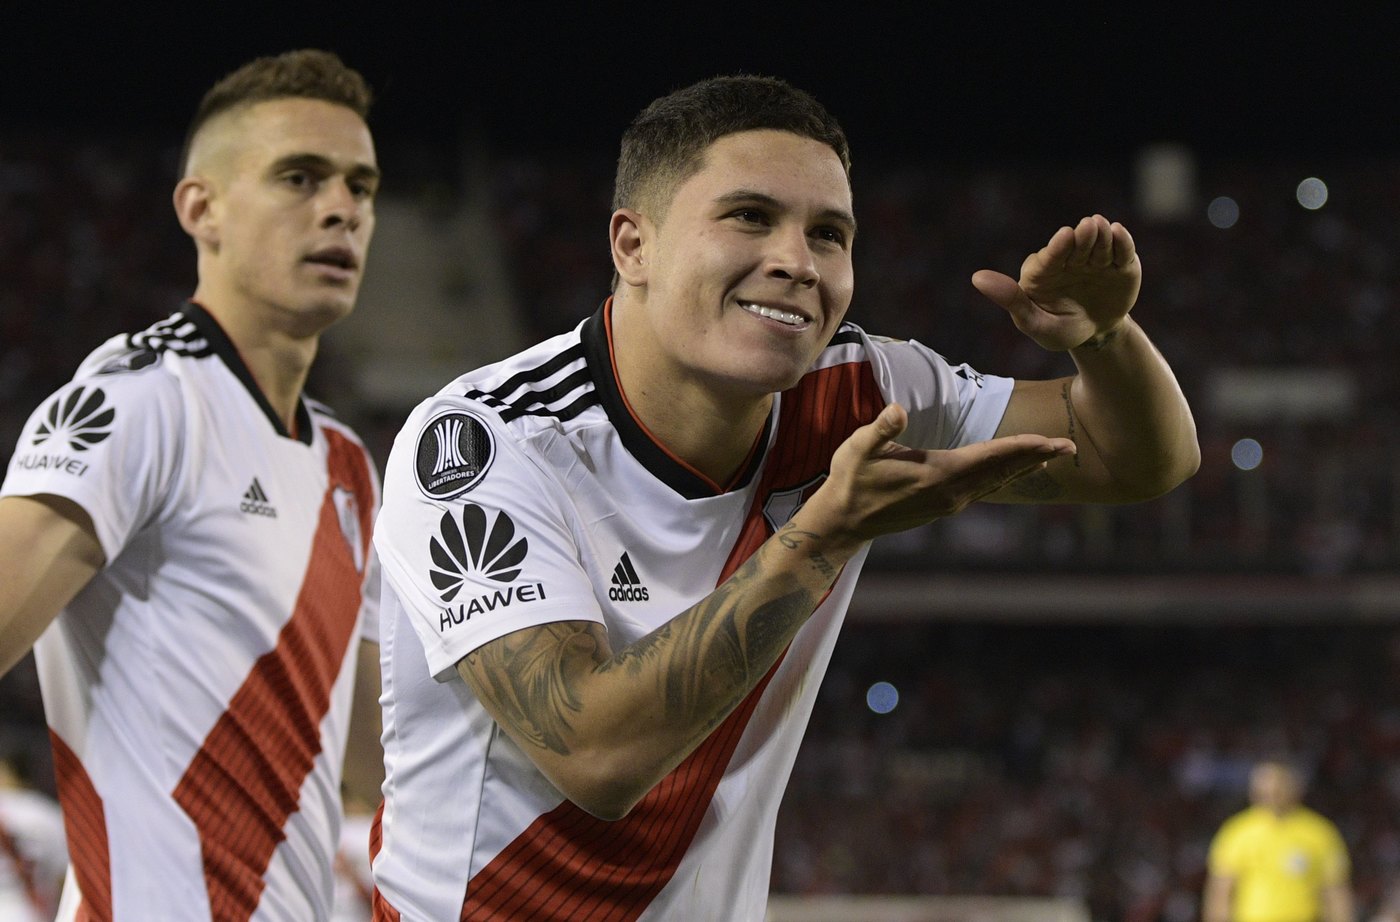 Alianza Lima-River Plate mercoledì 6 marzo